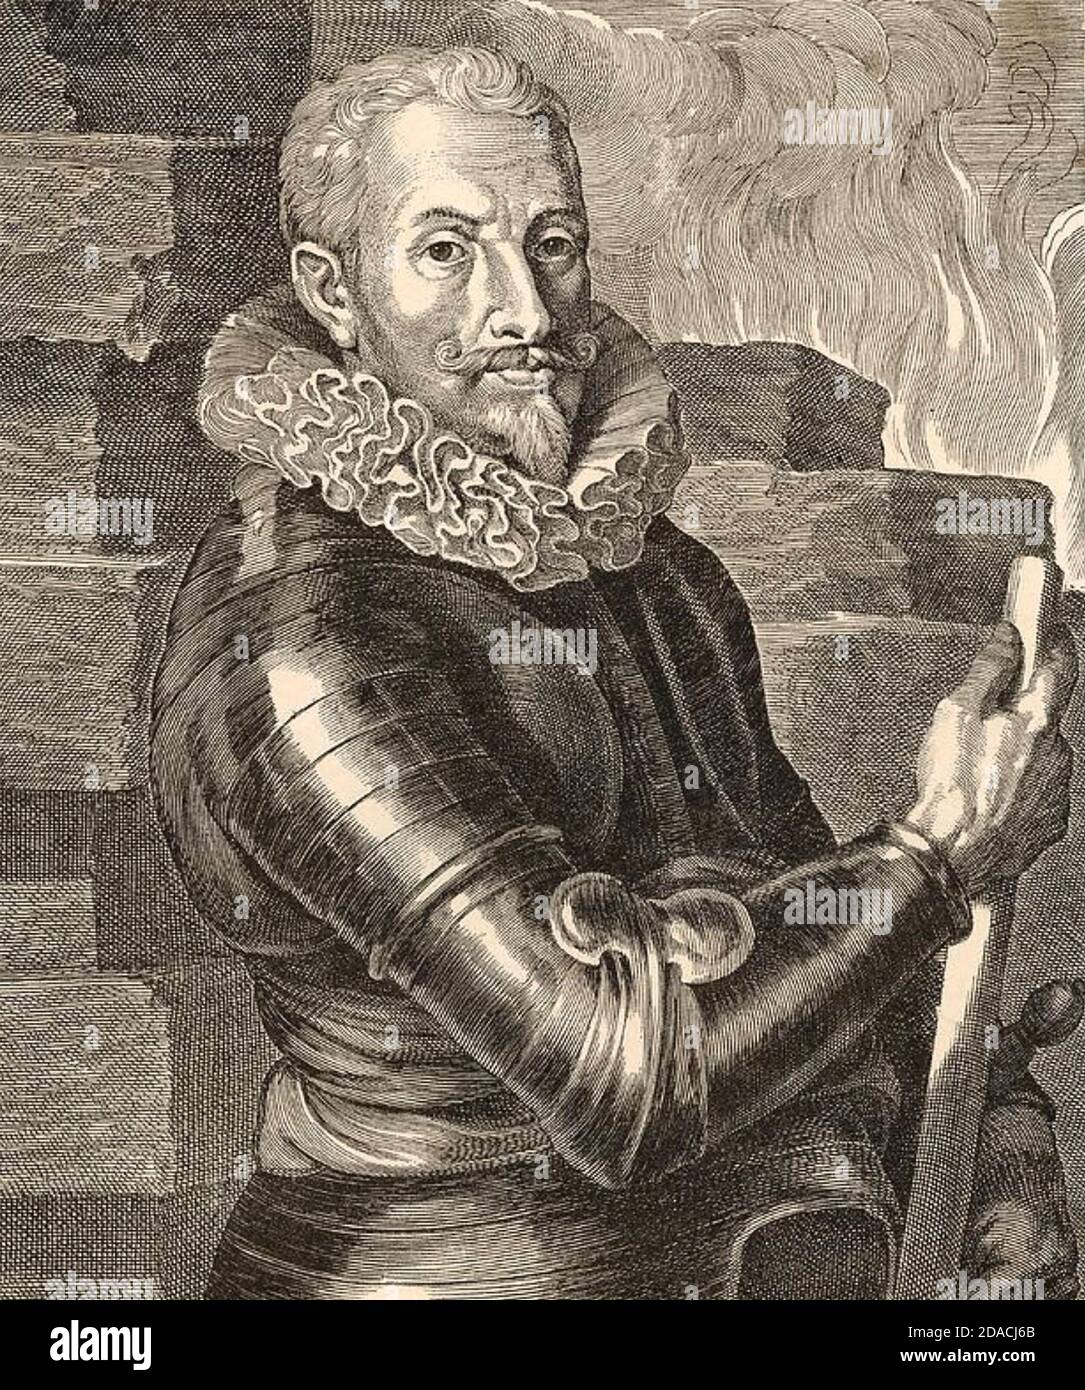 JOHANN TSERCLAES, Graf von Tilly (1559-1632) kommandierte den Katholischen Bund während des Dreißigjährigen Krieges Stockfoto